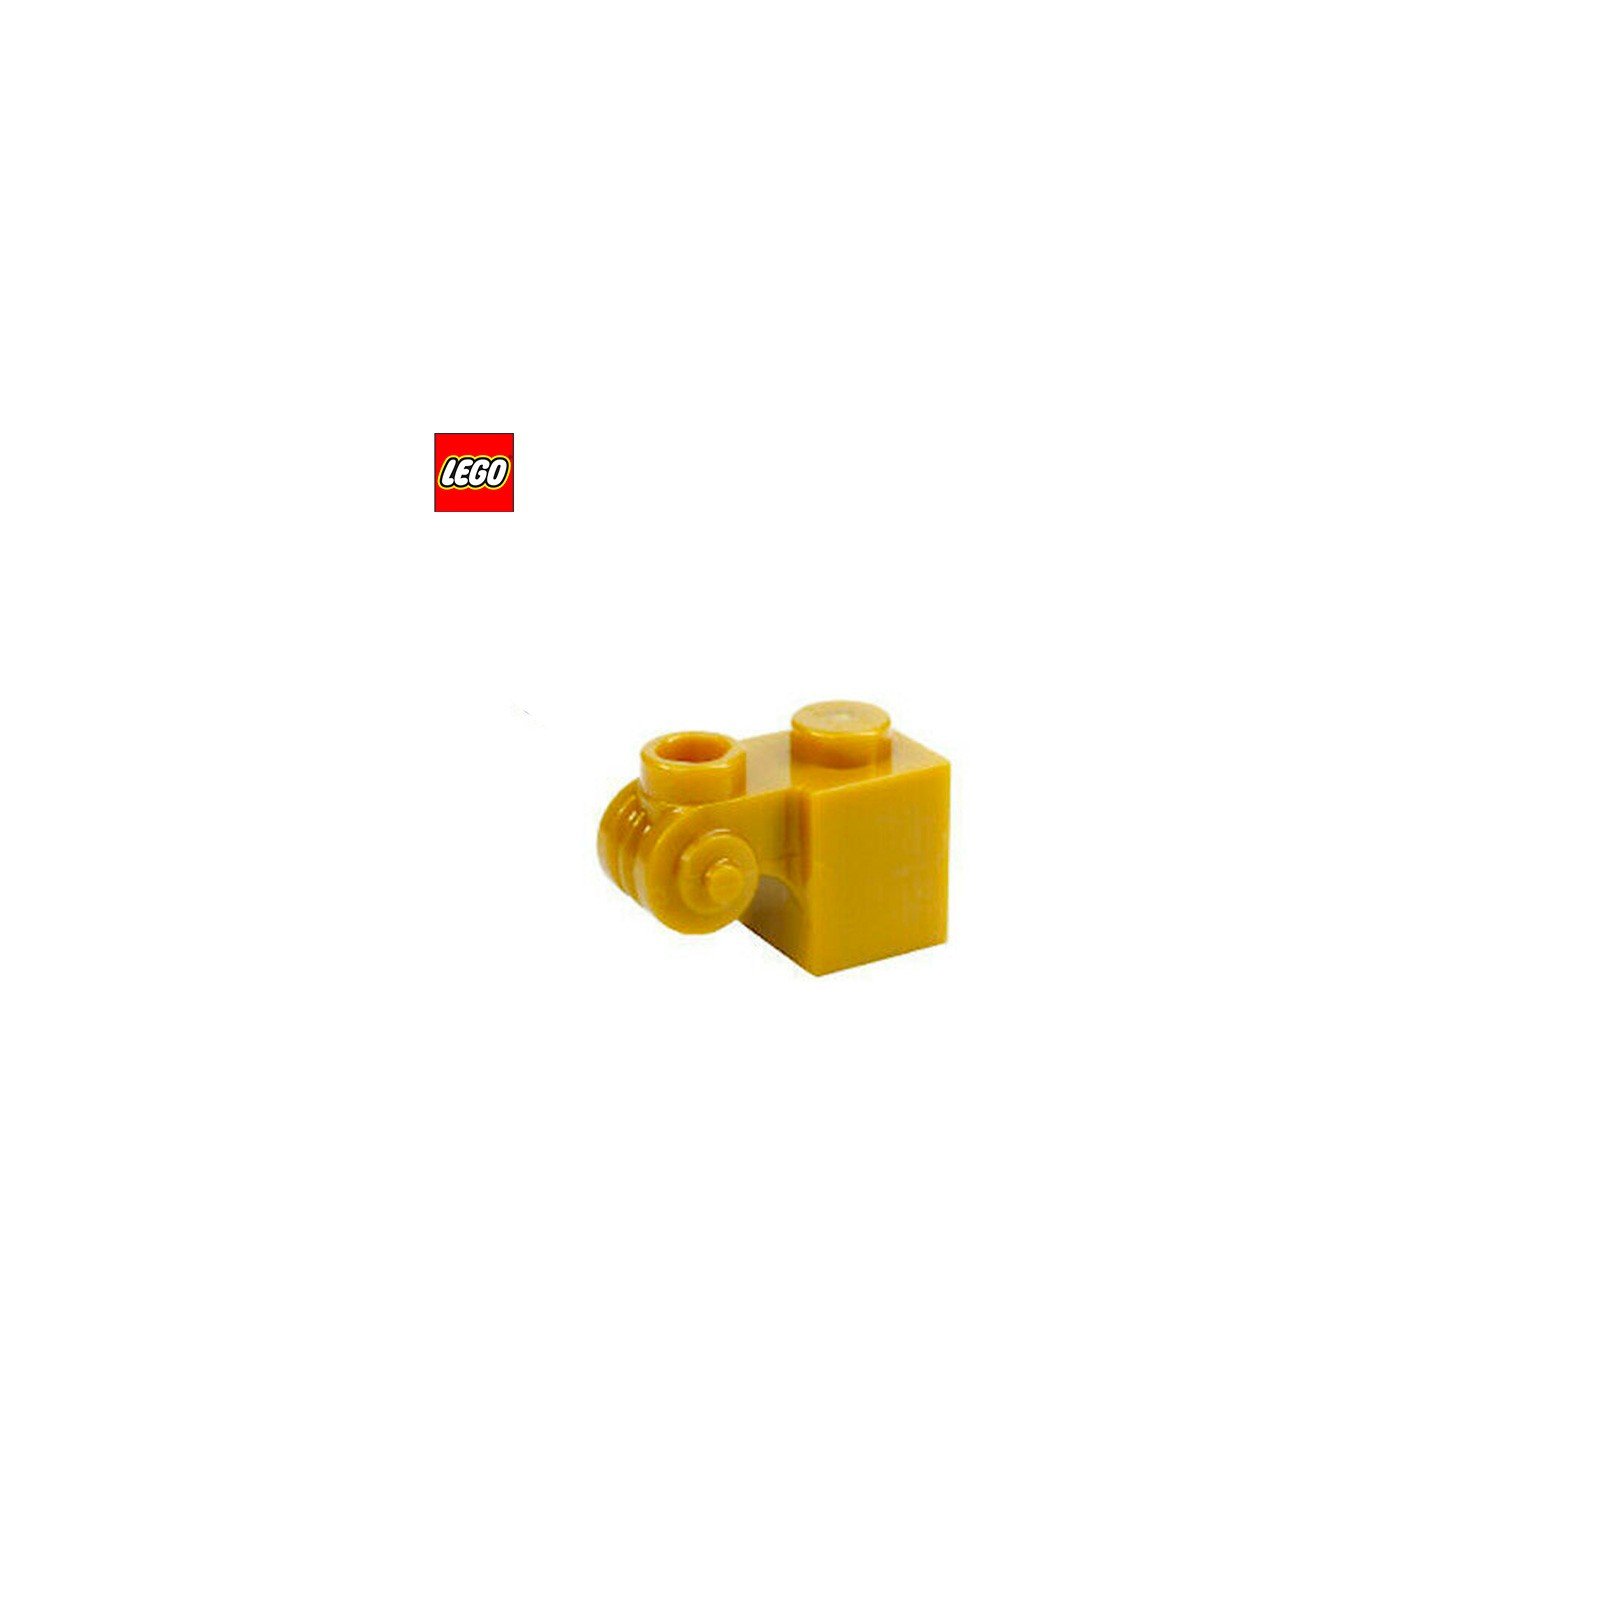 Brique 1x1 avec bout arrondi - Pièce LEGO® 20310